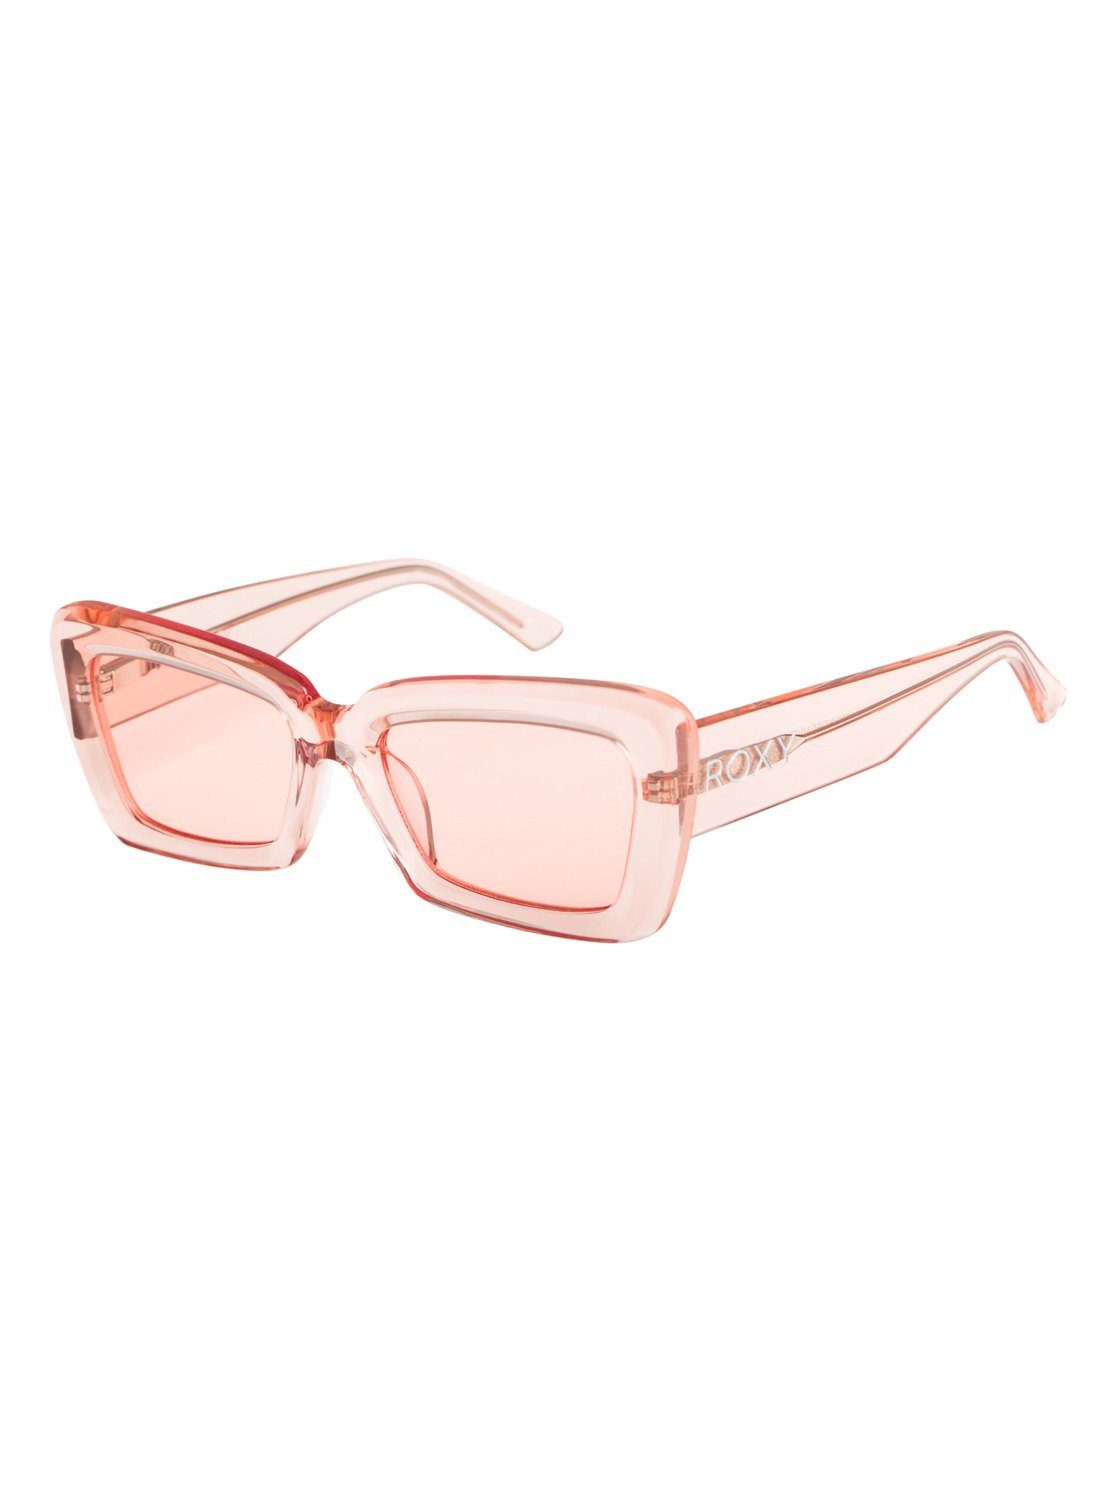 Roxy Sonnenbrille Bow Tie online kaufen | OTTO